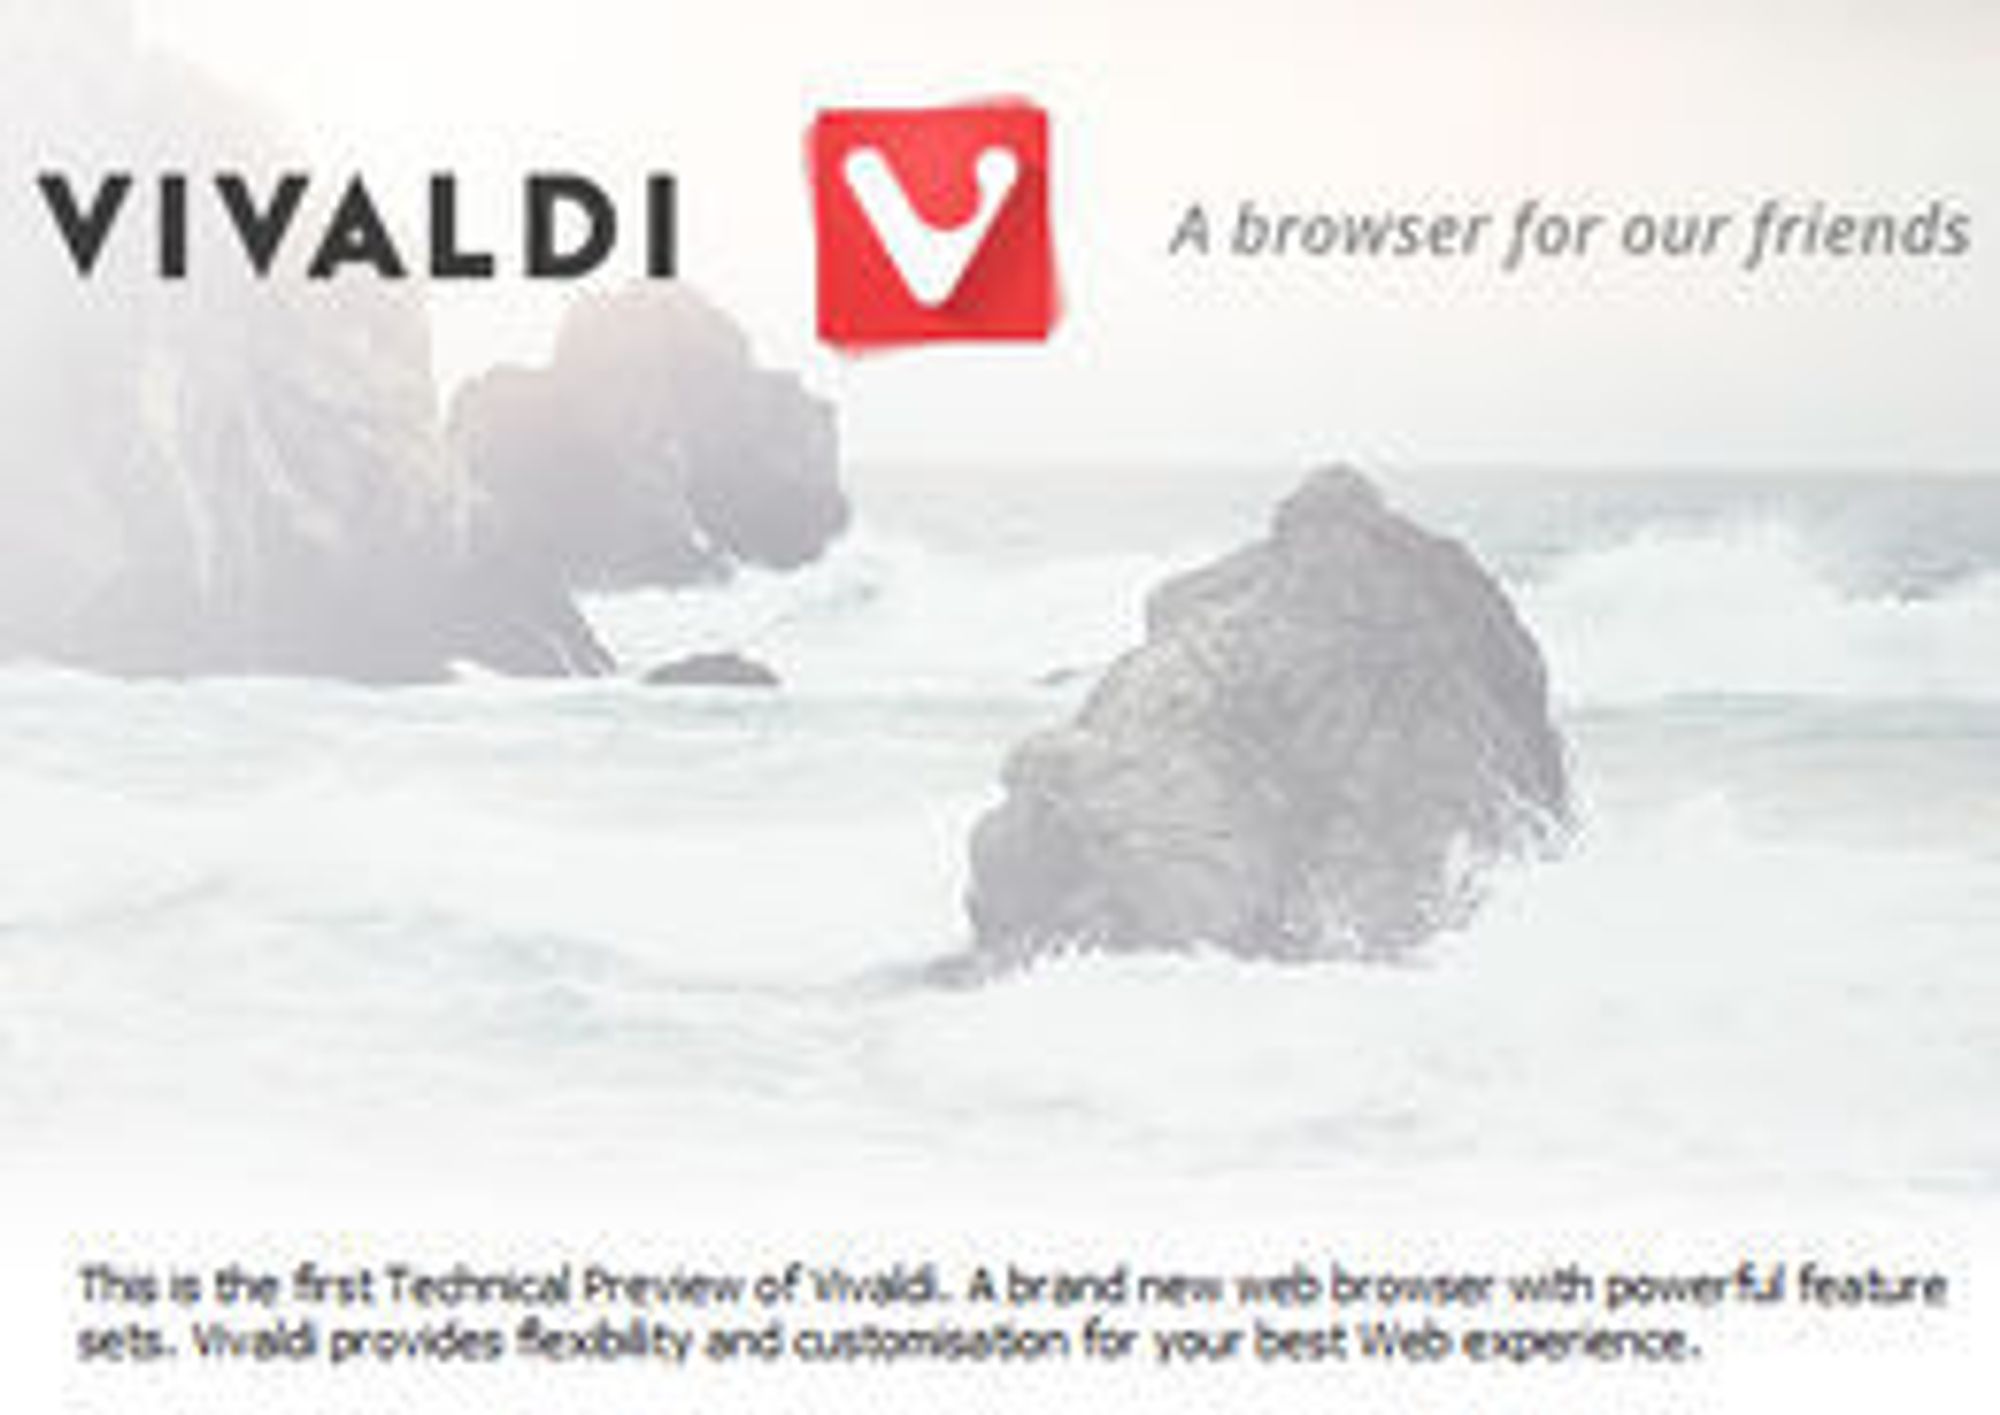 Vivaldi er en nettleser for våre venner, er slagordet deres. Her ser vi også nettleser-logoen.